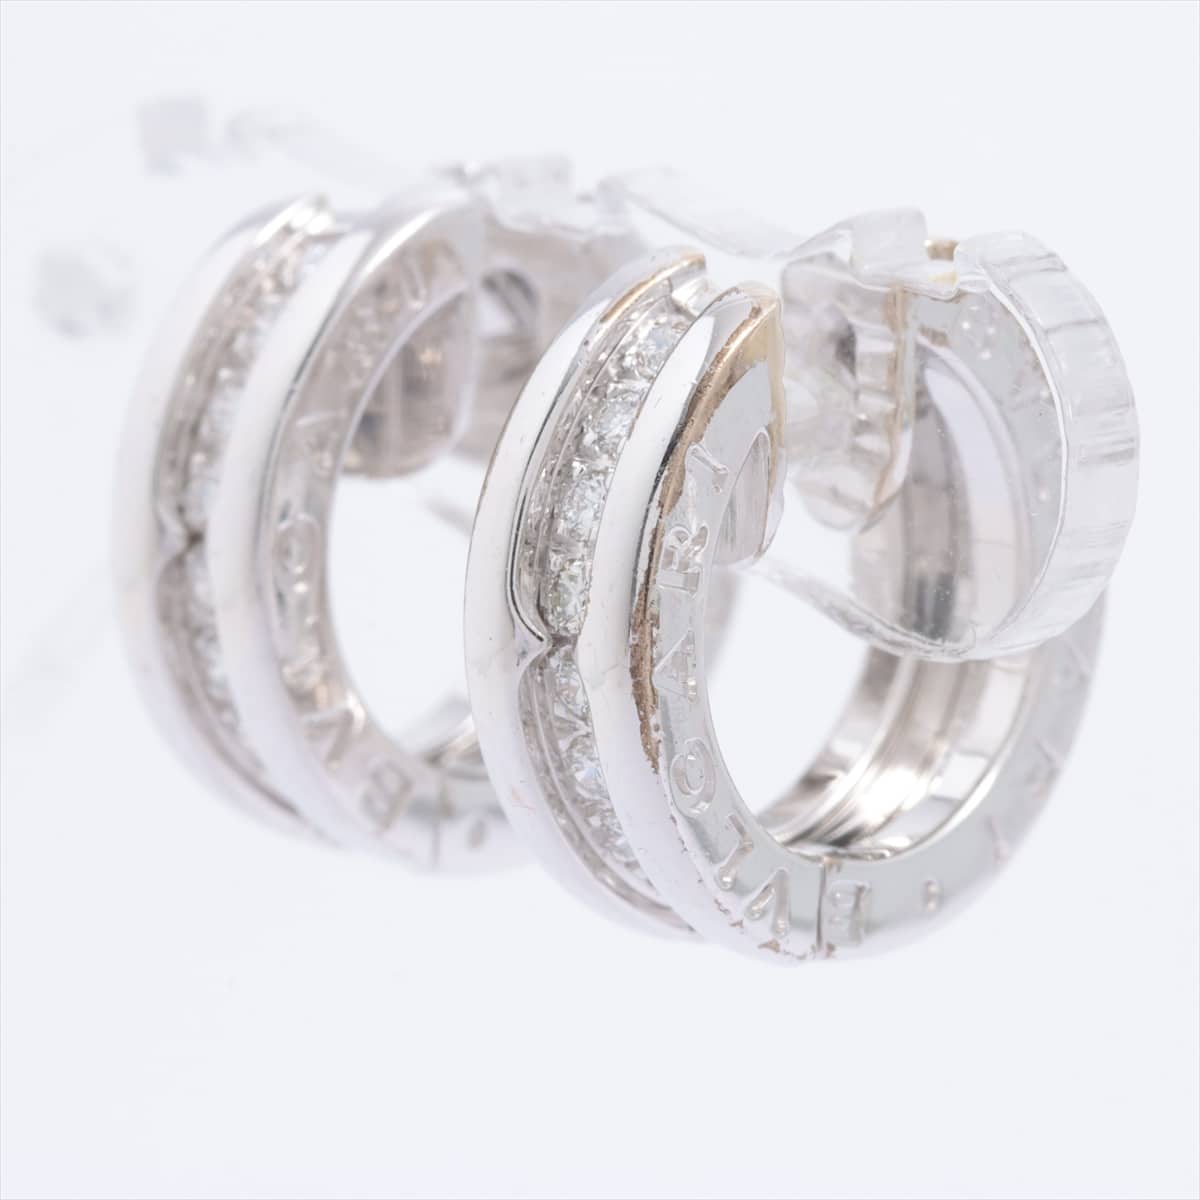 Bvlgari B.Zero 1 diamond Piercing jewelry 750 WG 8.3g